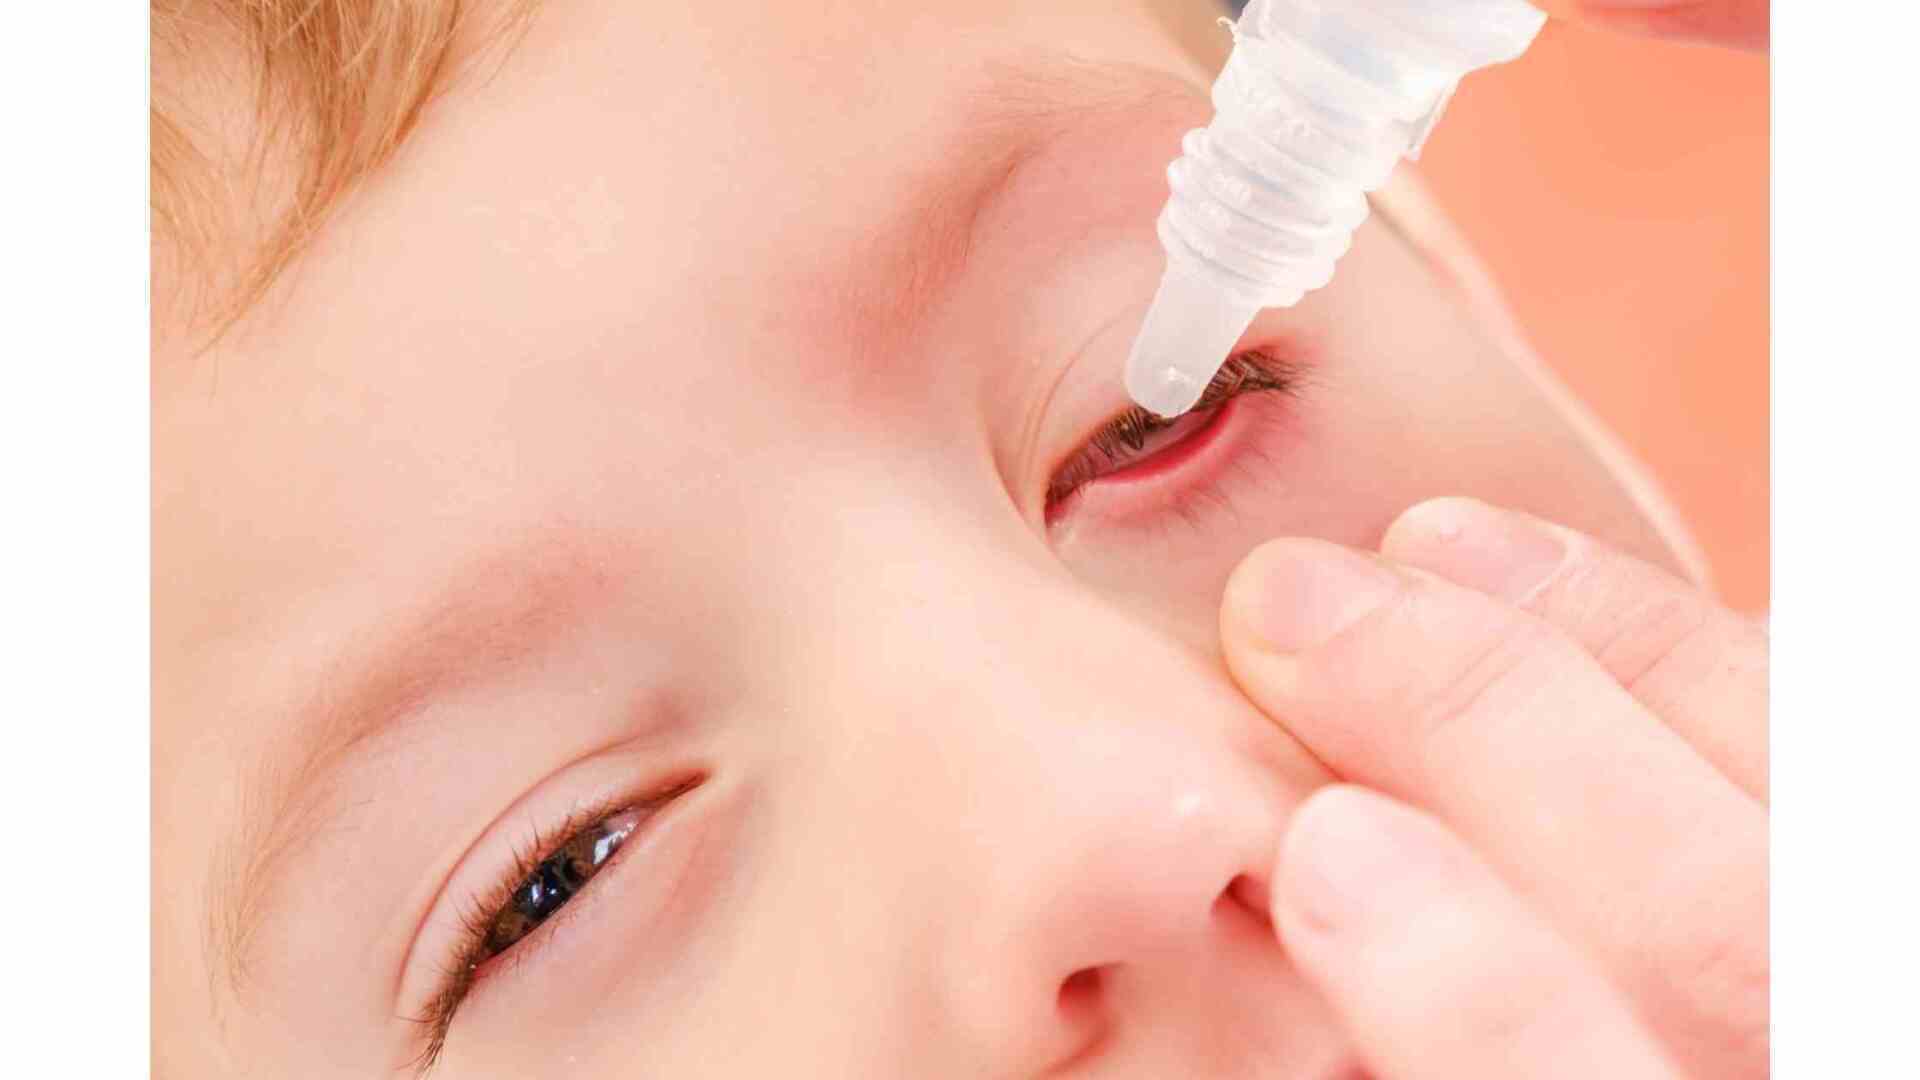 criança com conjuntivite alérgica sendo tratada com colírio